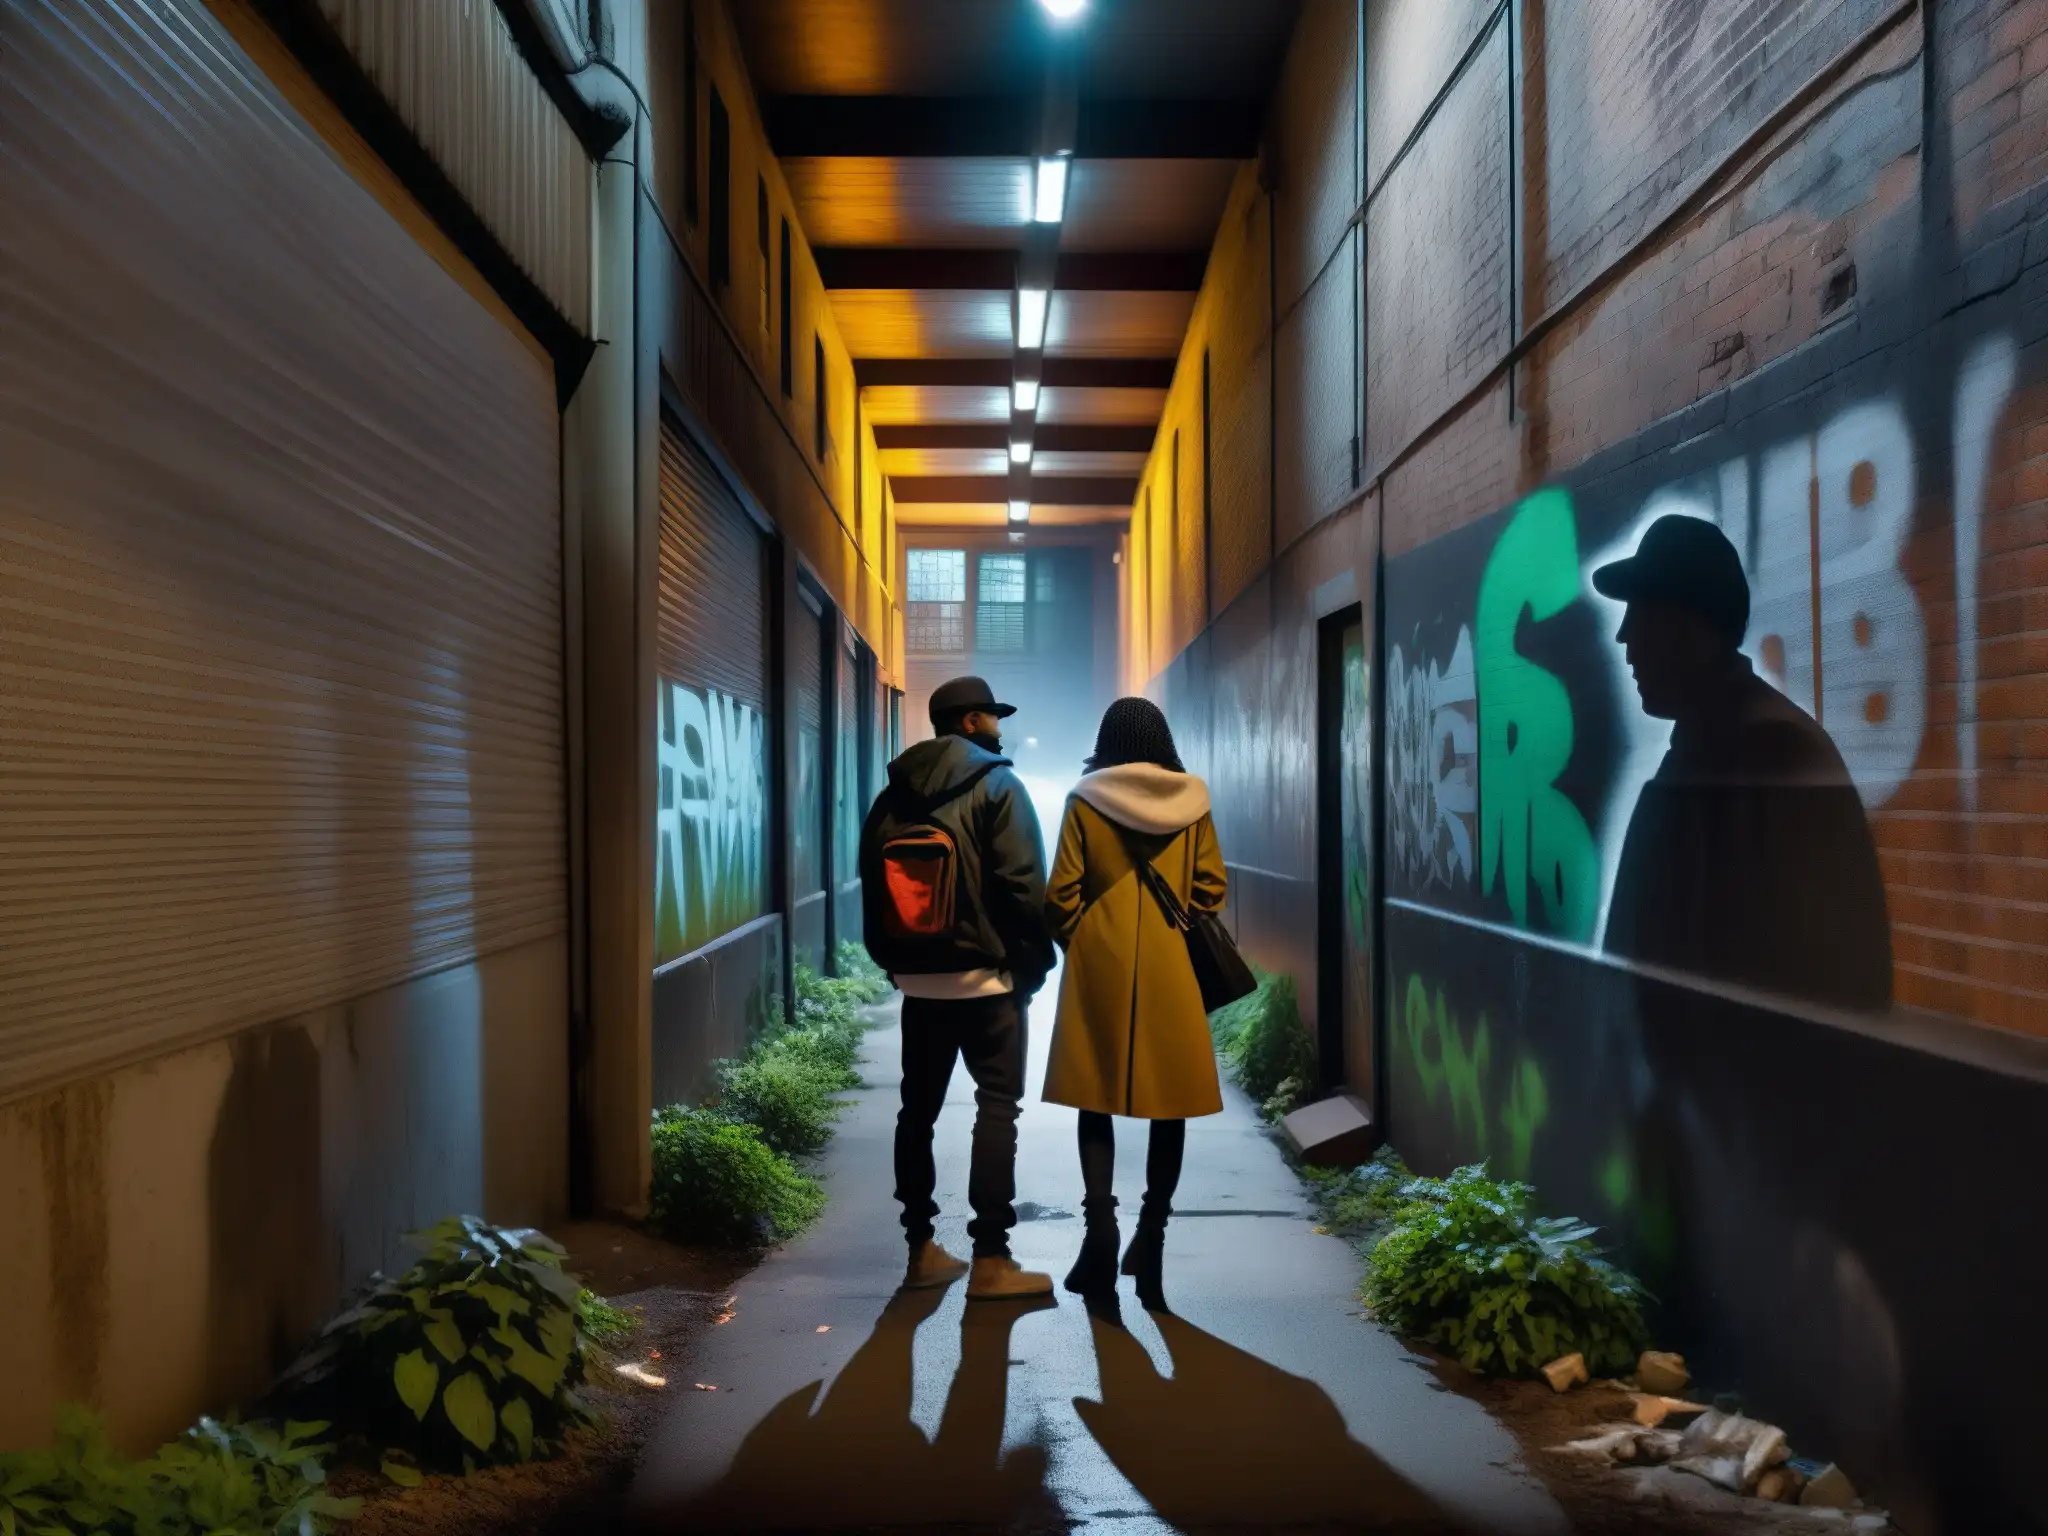 En un callejón sombrío con paredes cubiertas de graffiti, se ven figuras enigmáticas intercambiando conversaciones susurradas, añadiendo a la atmósfera de misterio que rodea a las leyendas urbanas